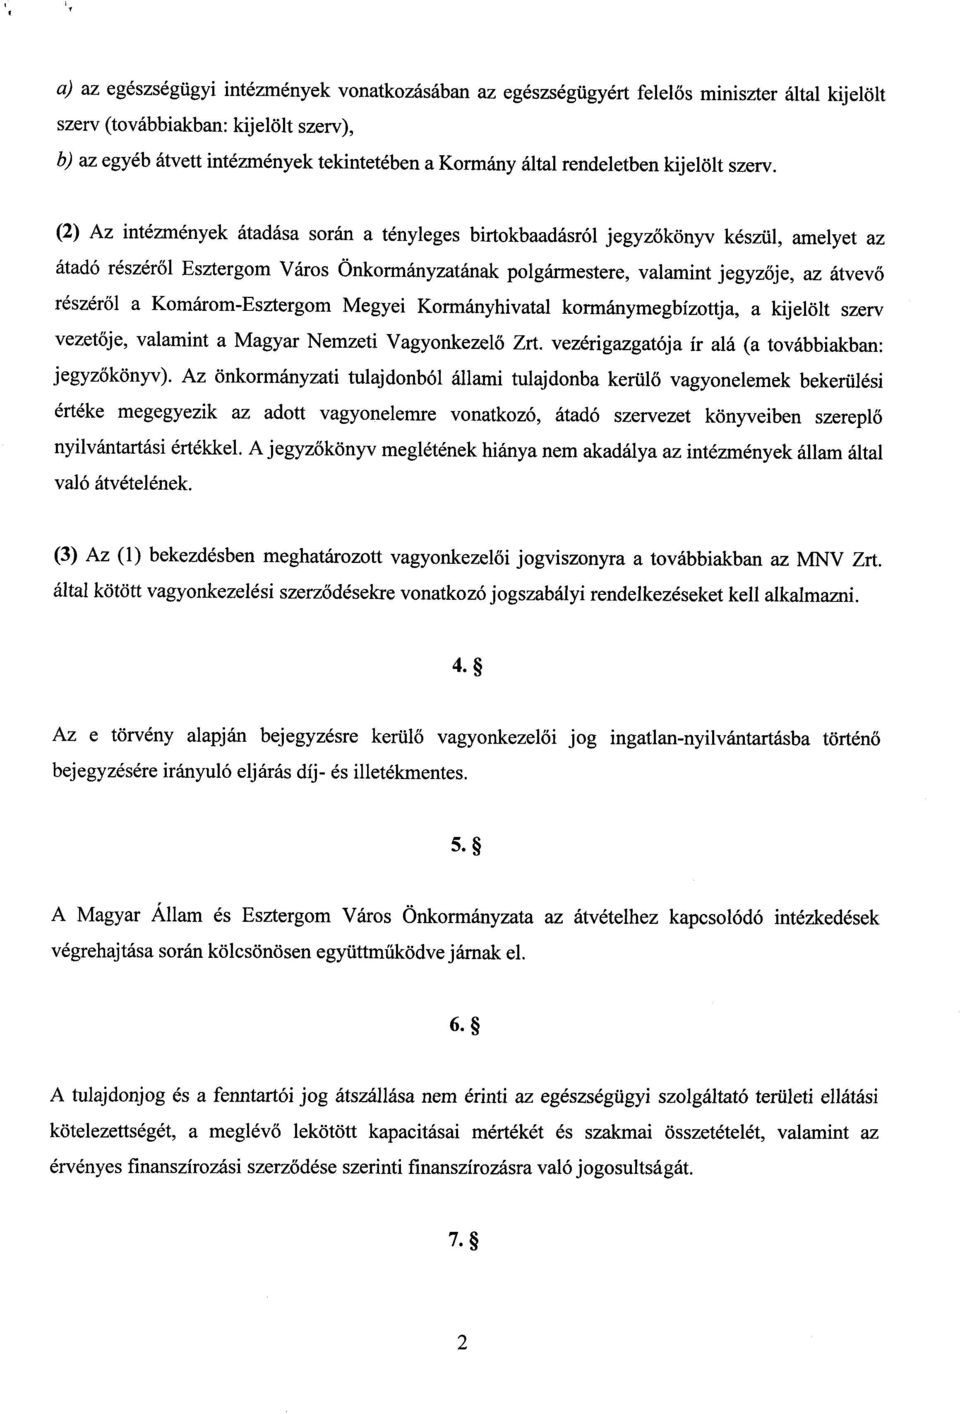 (2) Az intézmények átadása során a tényleges birtokbaadásról jegyzőkönyv készül, amelyet az átadó részér ől Esztergom Város Önkormányzatának polgármestere, valamint jegyz ője, az átvevő részér ől a